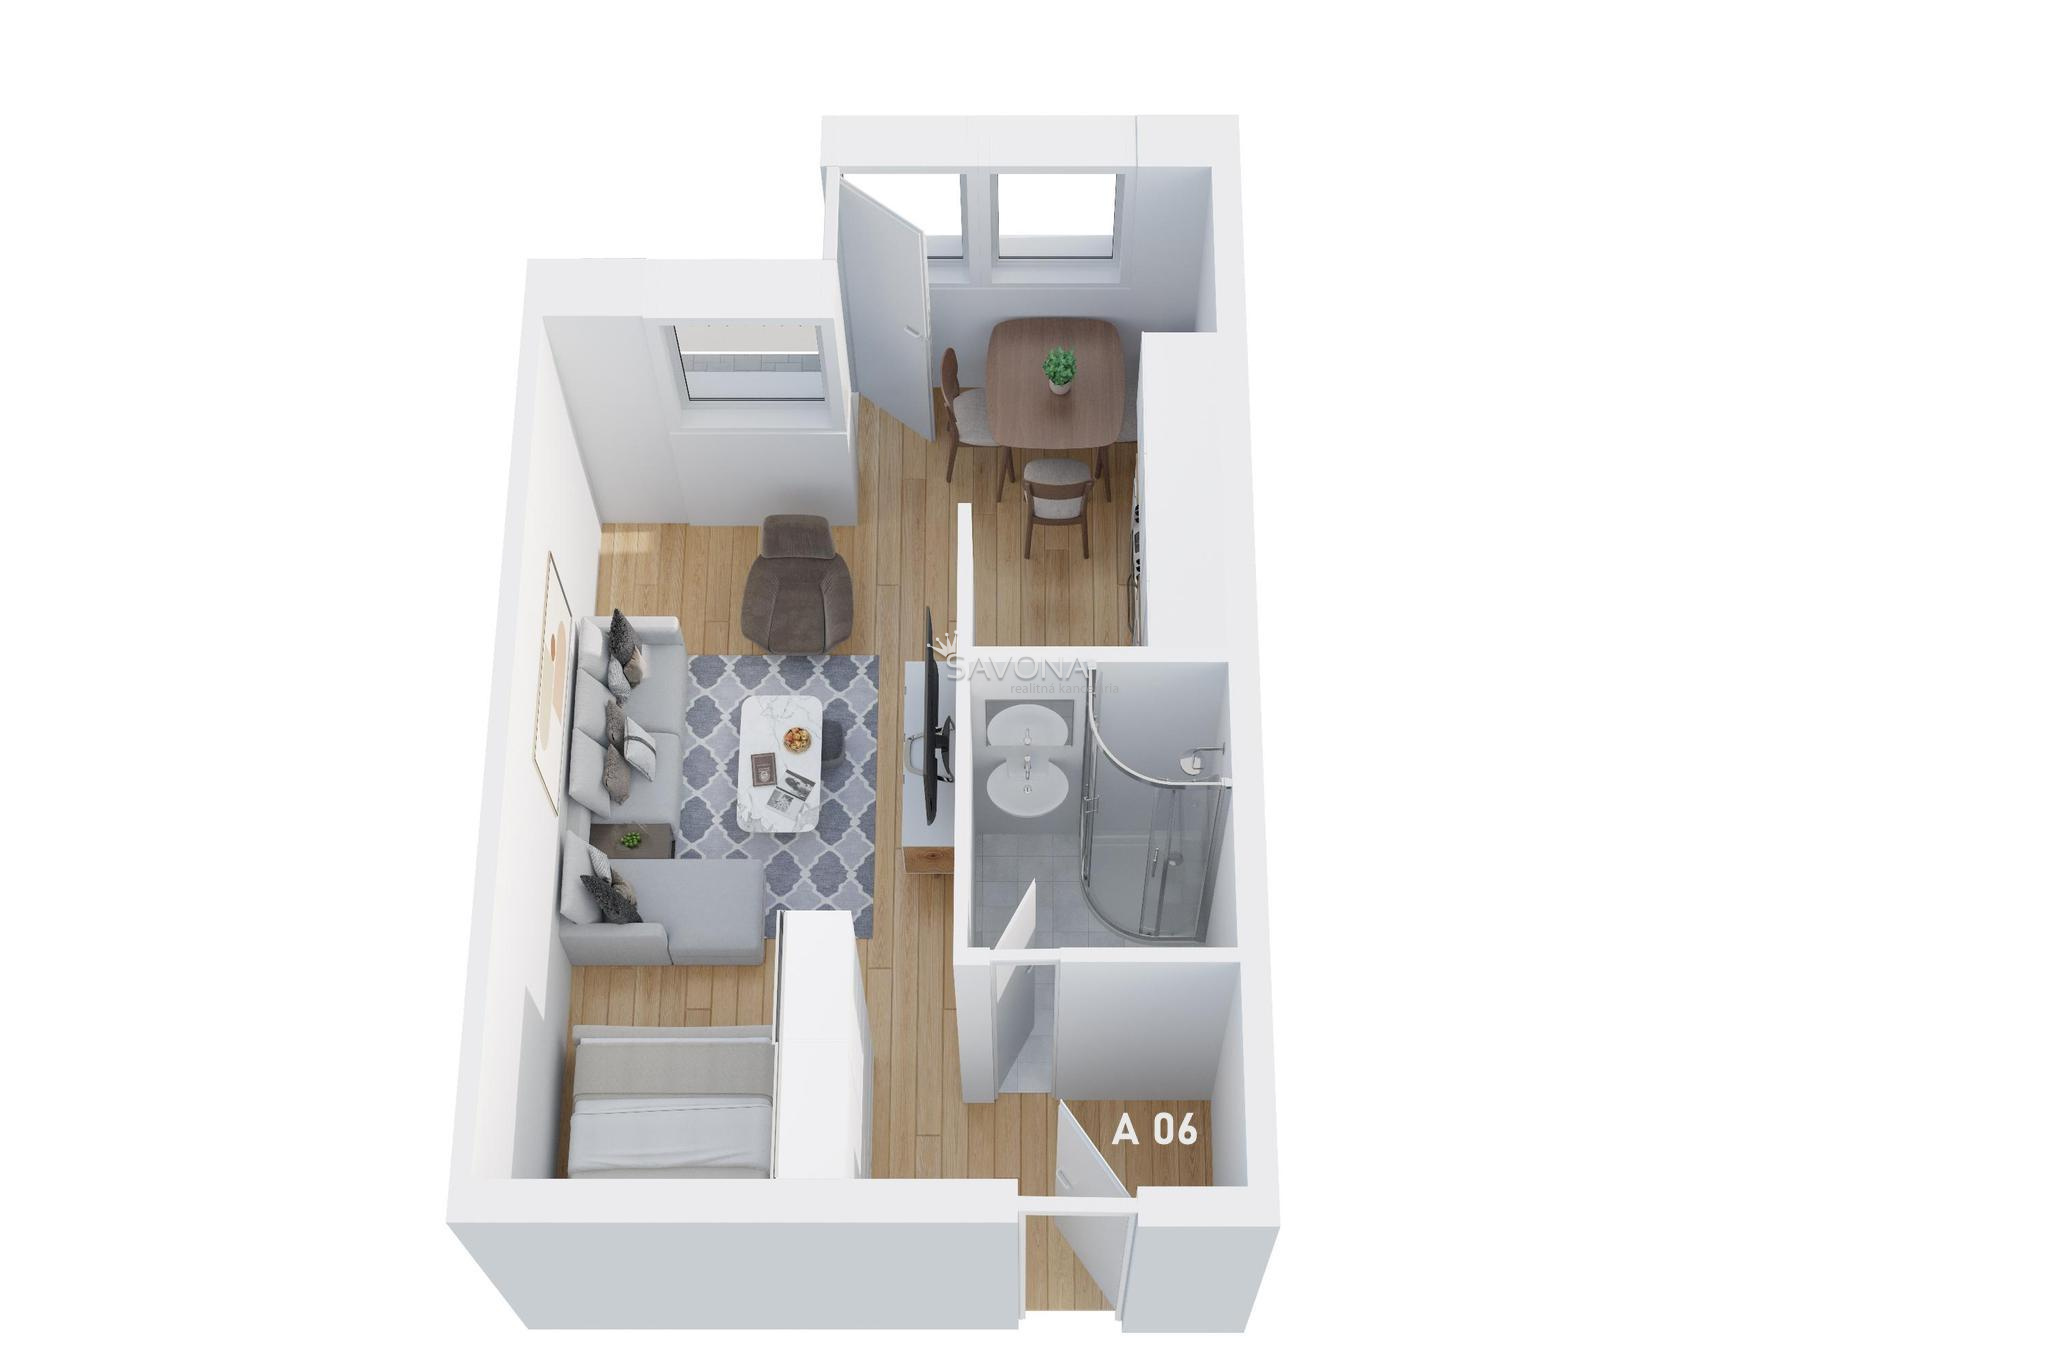 #napredaj 1 izbový byt | A 06 - 42 m2 – s výhľadom na TATRY